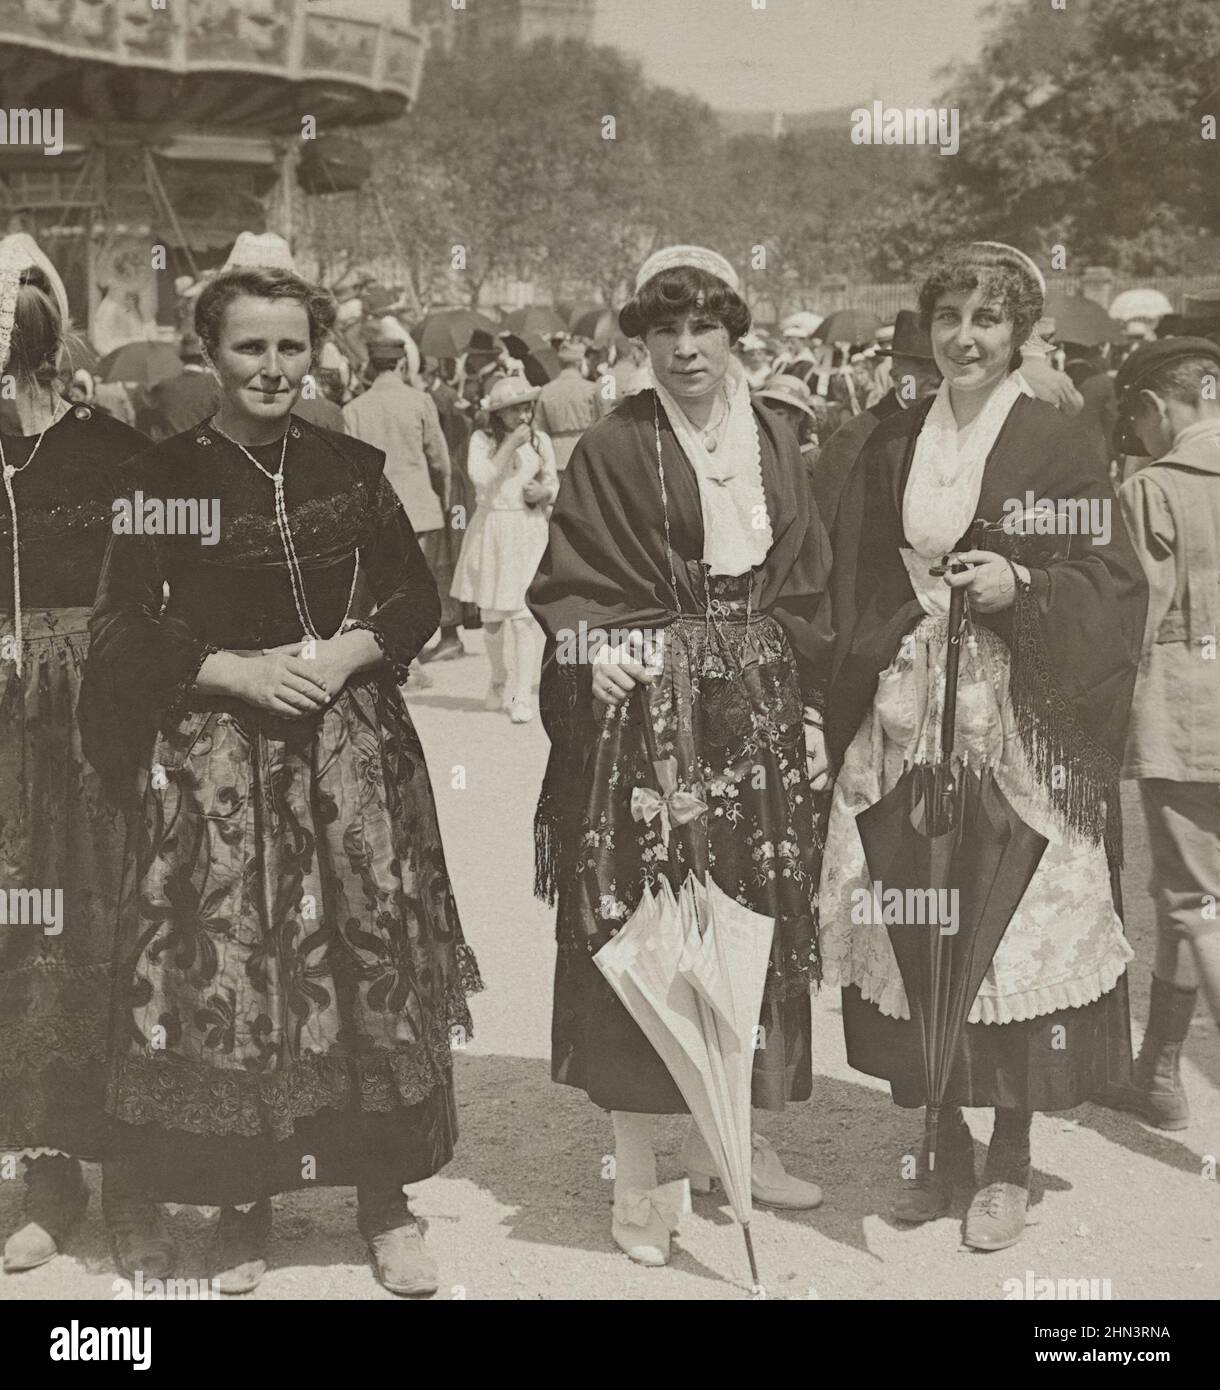 Foto vintage de chicas francesas con vestido tradicional con gorras de encaje y delantales de seda en la feria. 1900s Foto de stock